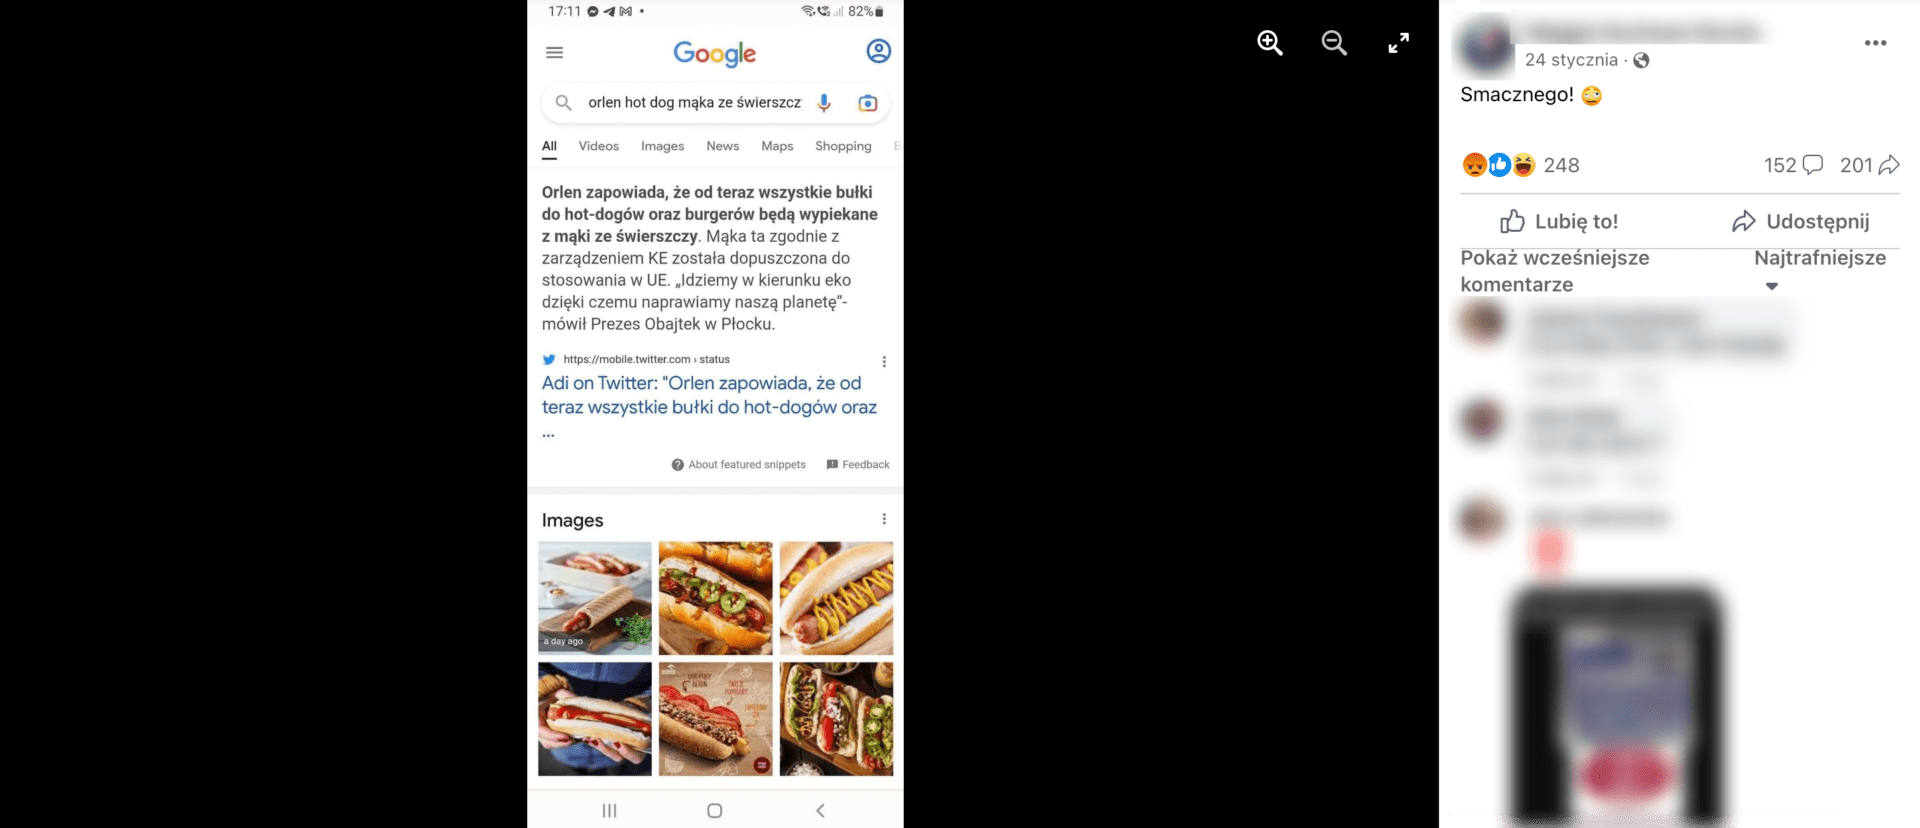 Zrzut ekranu omawianego posta. Widoczne są zdjęcia hot dogów.